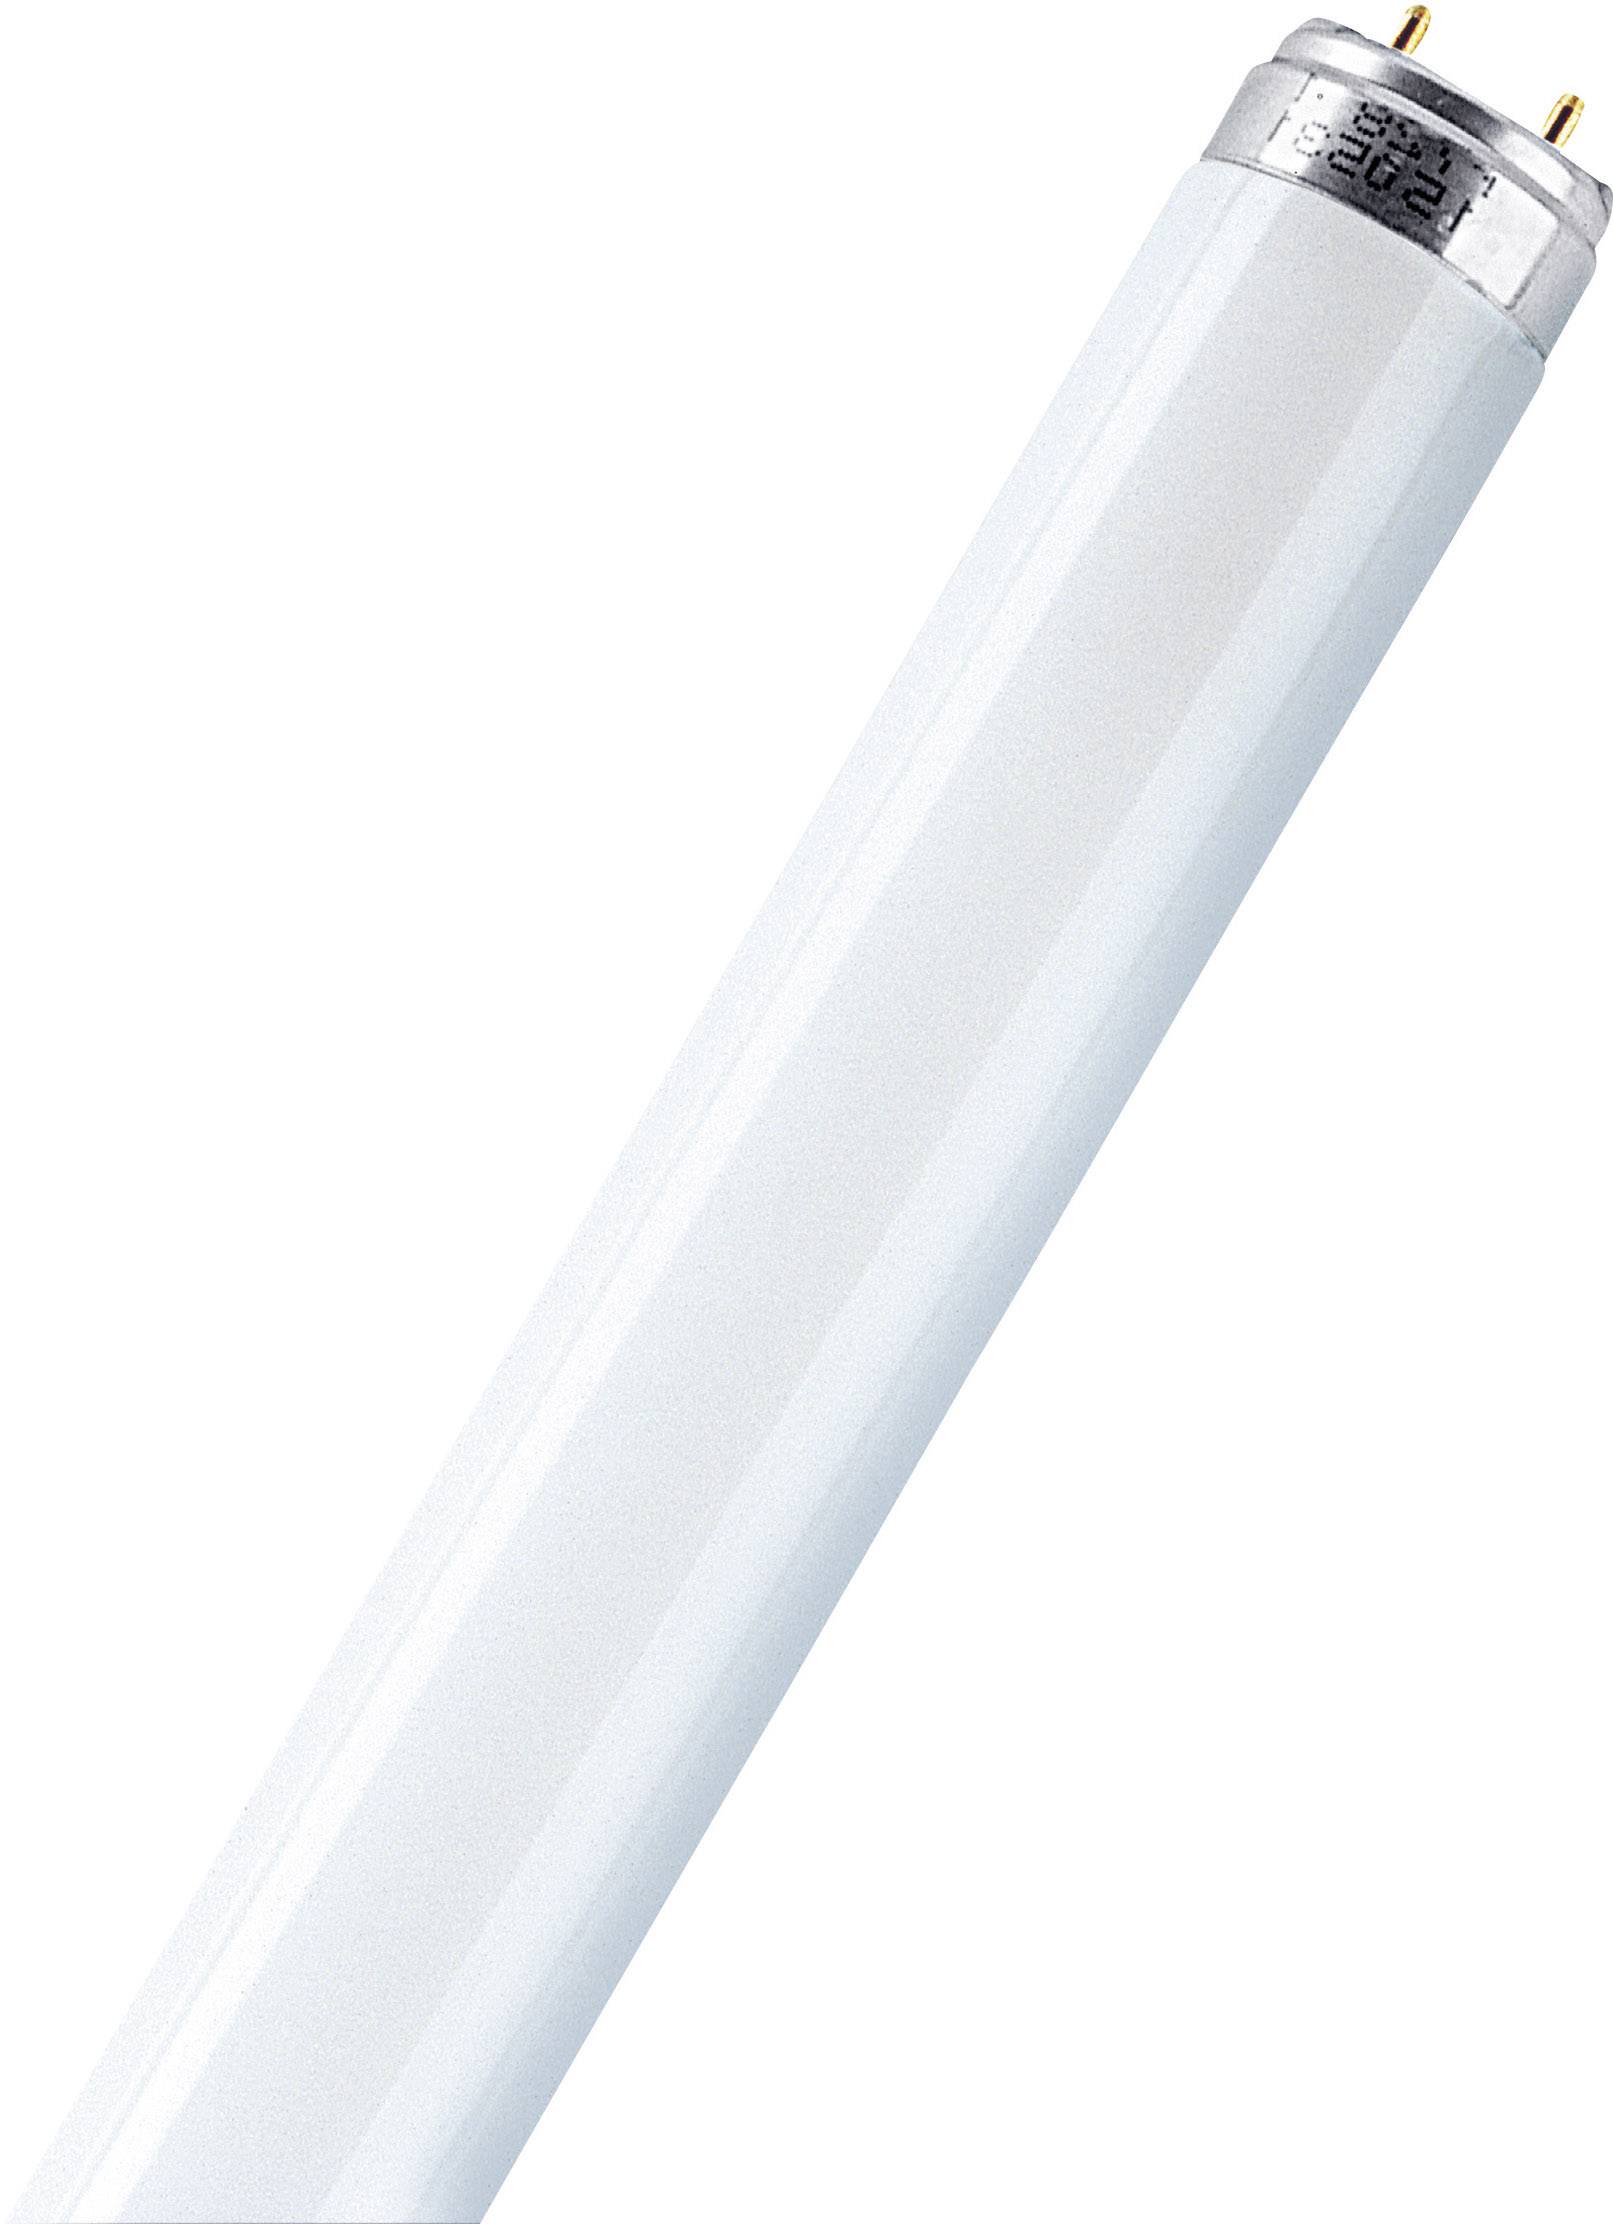 OSRAM Leuchtstoffröhre 1500 mm OSRAM 230 V G13 58 W Kalt-Weiß EEK: A Röhrenform 1 St.